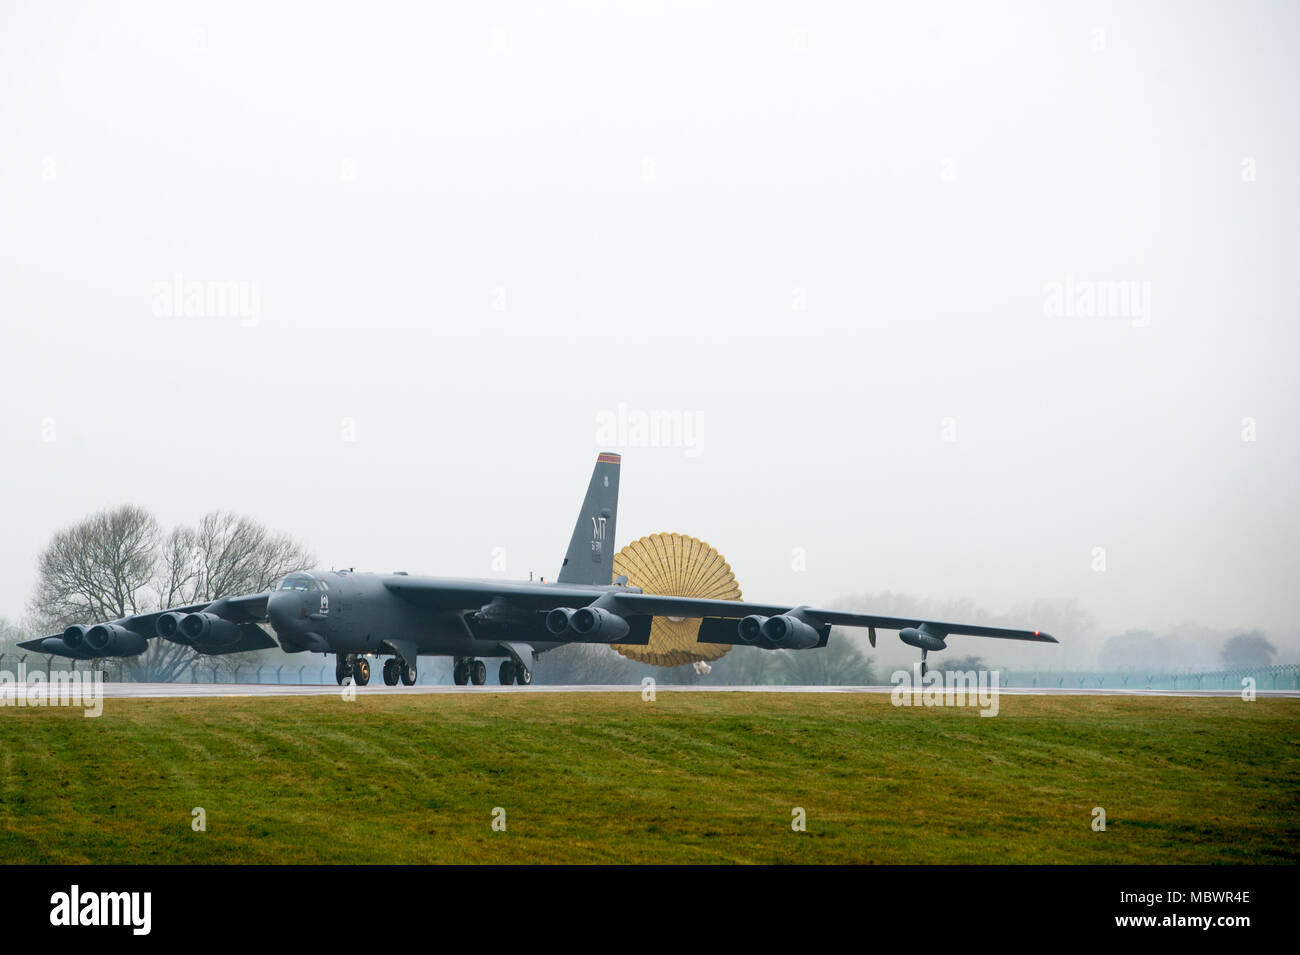 Un B-52 Stratofortress desplegando desde la base de la Fuerza Aérea Minot, N.D., taxis de la pista de aterrizaje de la RAF Fairford, Inglaterra, 9 de enero de 2018. El despliegue de los bombarderos estratégicos al Reino Unido ayuda a ejercer las Fuerzas Aéreas de los Estados Unidos en Europa la ubicación de operaciones de avanzada para los bombarderos. Entrenamiento con socios, aliados y otras unidades de la Fuerza Aérea de los EE.UU. ayuda a la 5ª bomba contribuir a ala dispuesta y capaz fuerzas. (Ee.Uu. Foto de la fuerza aérea por Tech. El Sgt. Joshua J. García) Foto de stock